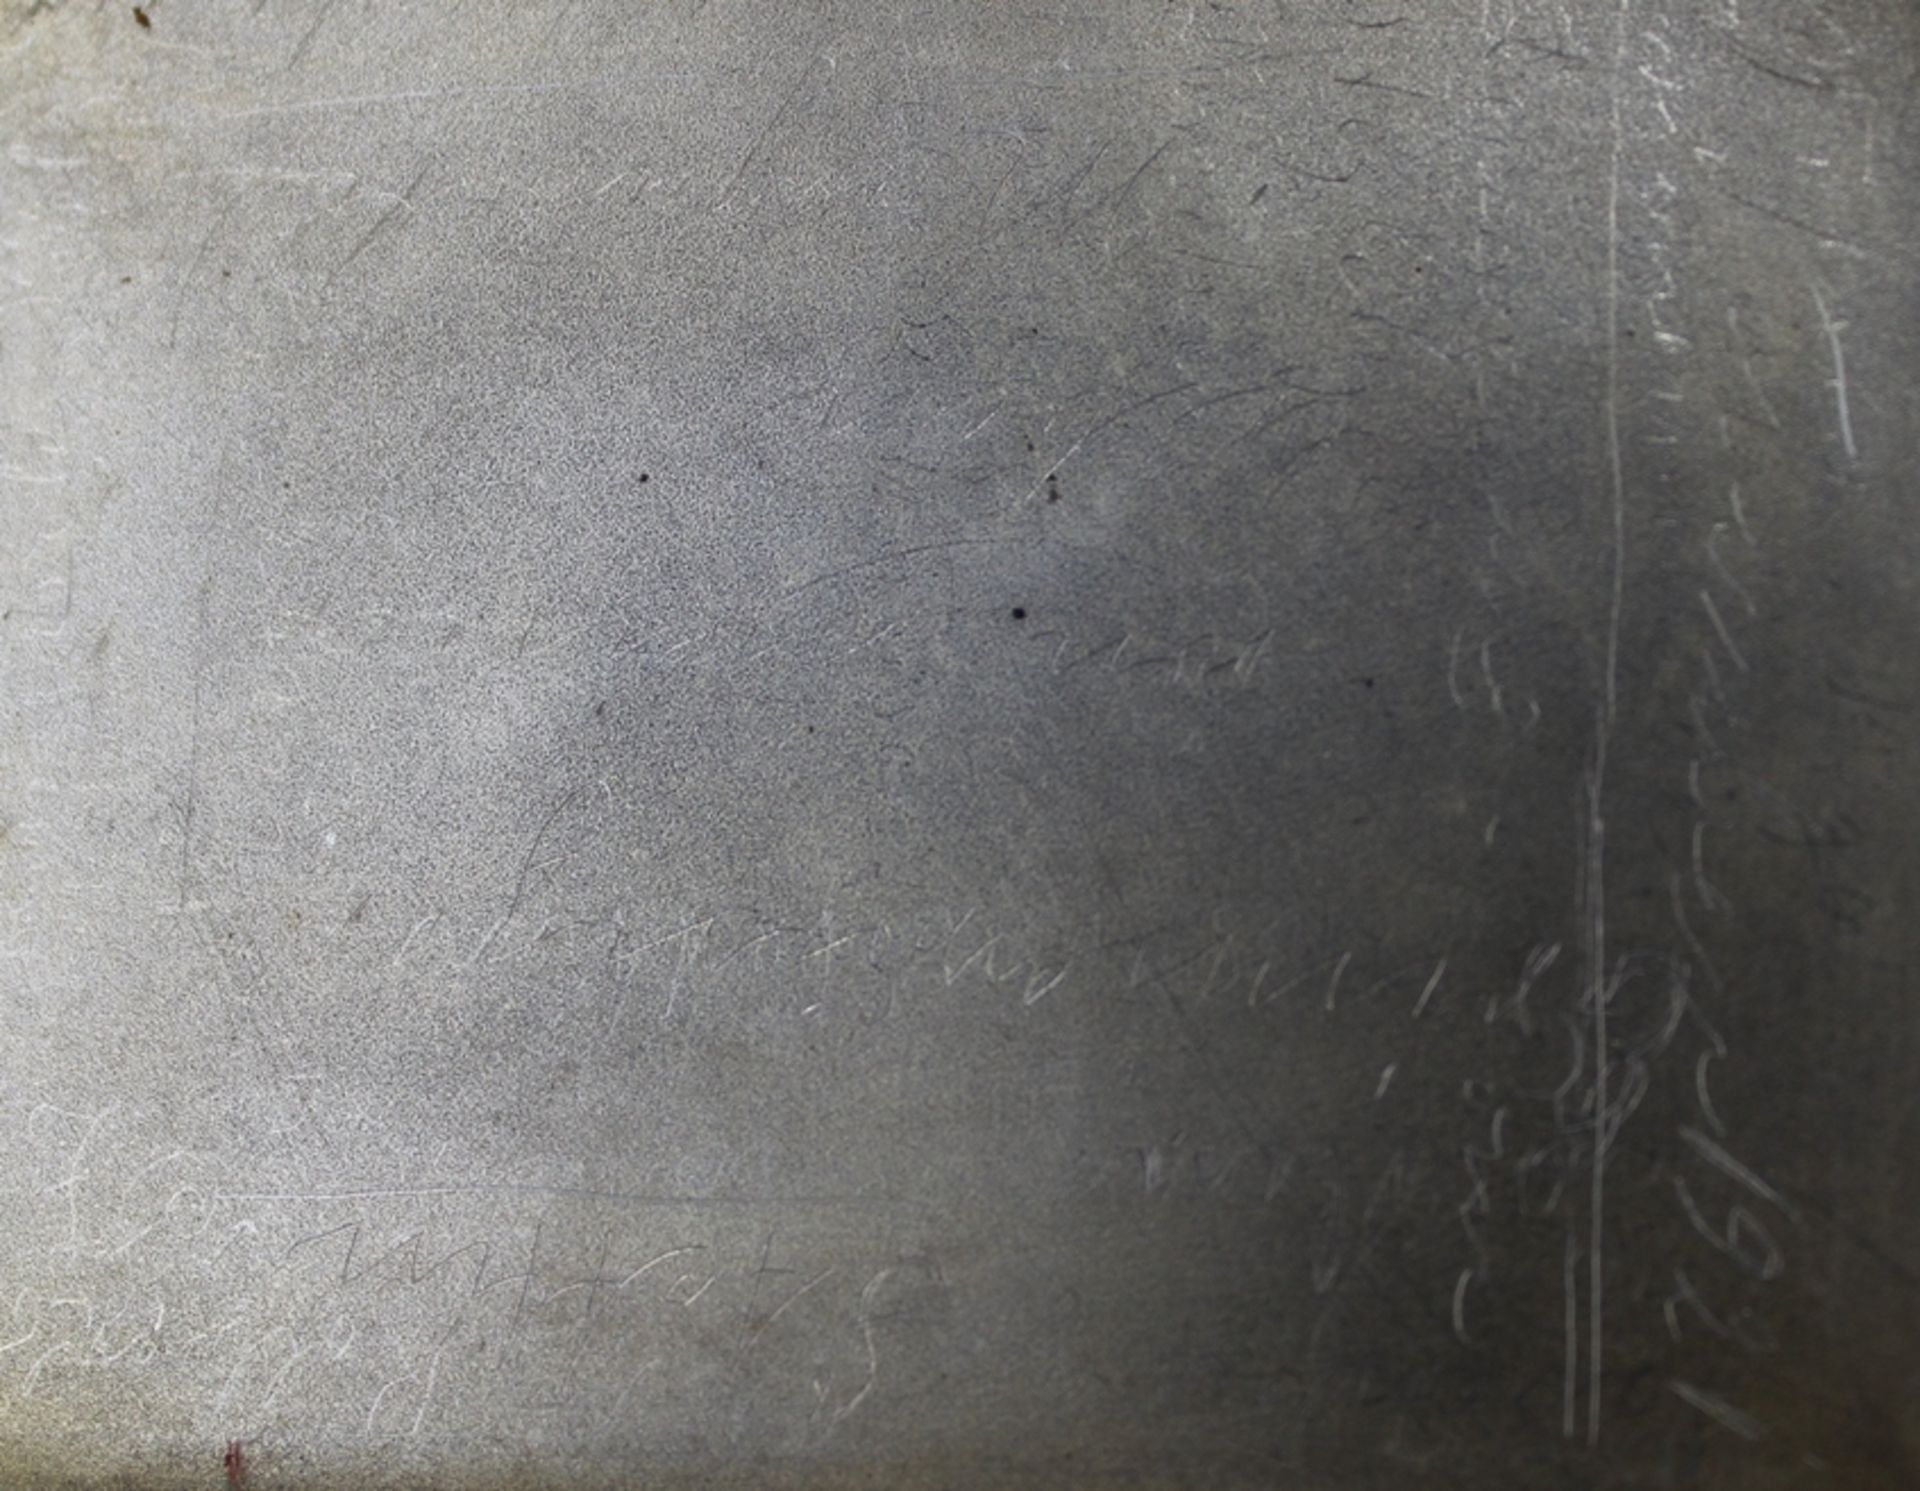 Zigaretten-Etui, 925er Silber, innen Gravur "AEG-SIA" und undeutl. Ritzgravuren, 123gr., ungeputzte - Bild 4 aus 6